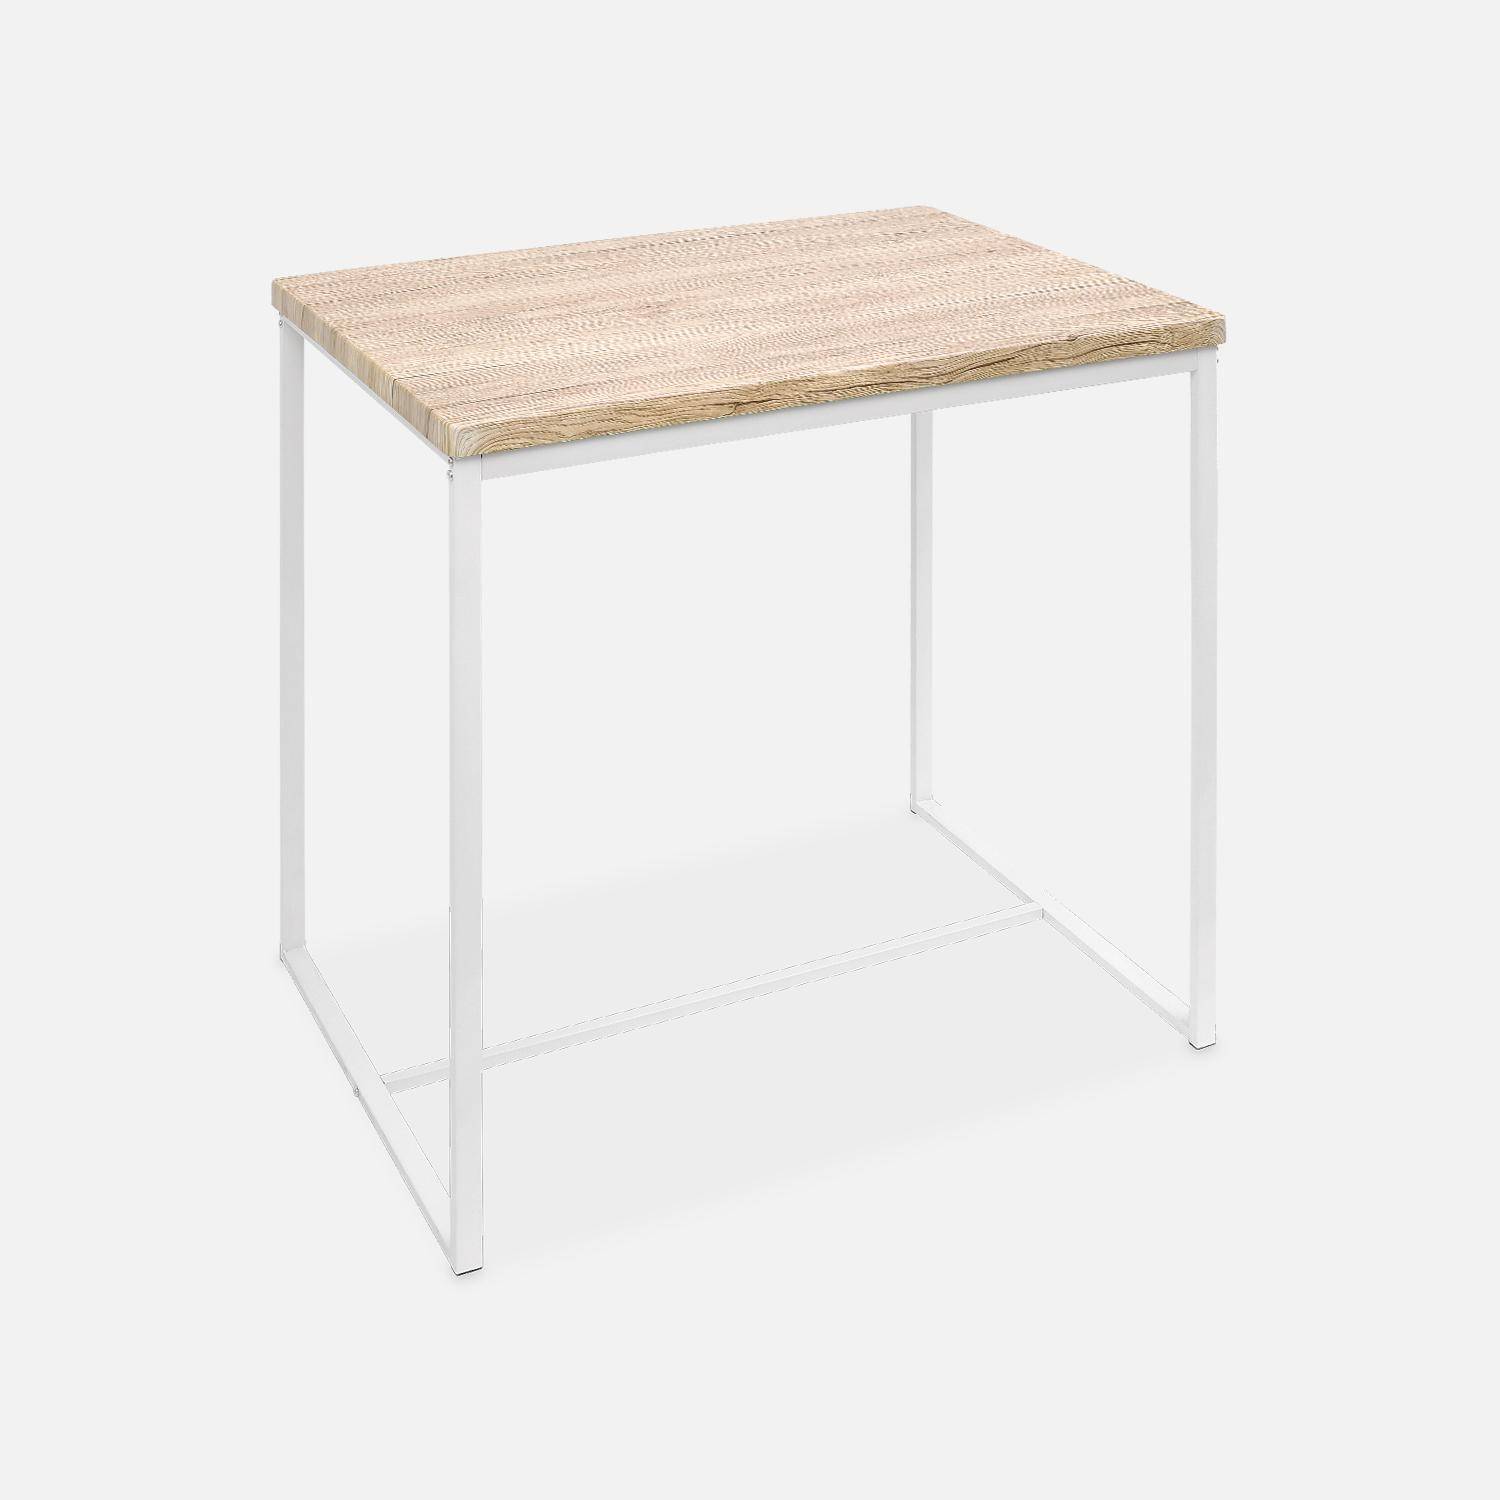 Set tavolo alto rettangolare LOFT con 4 sgabelli da bar, arredamento in acciaio e legno, incasso, design Photo3